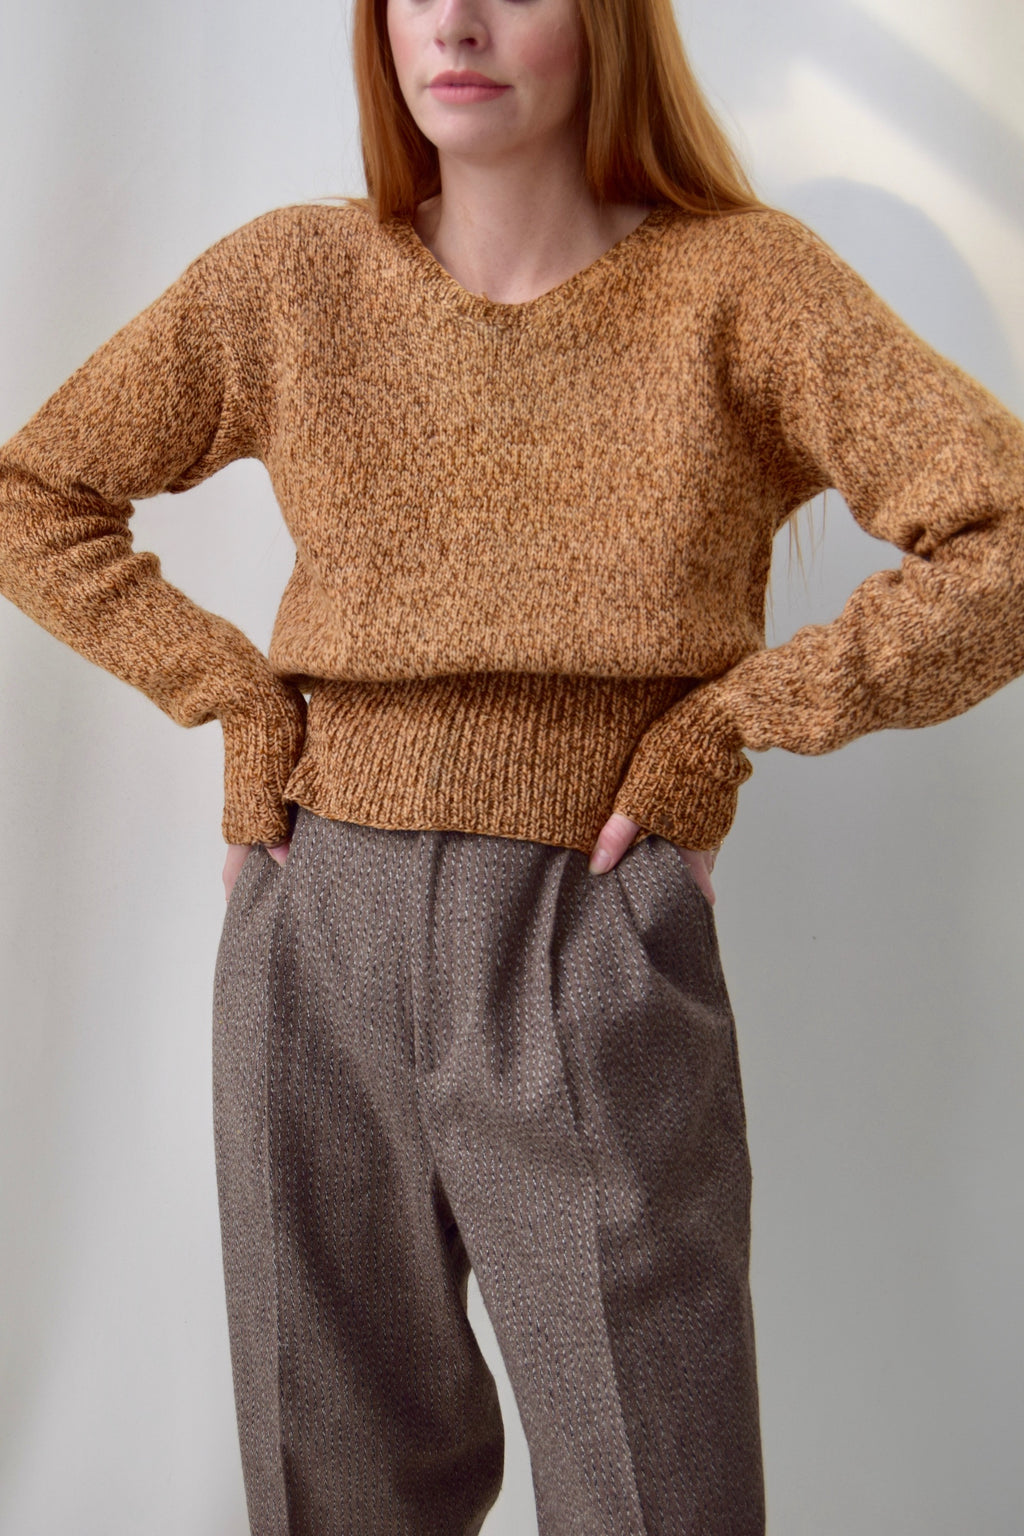 Vintage 1940's Wool Sweater